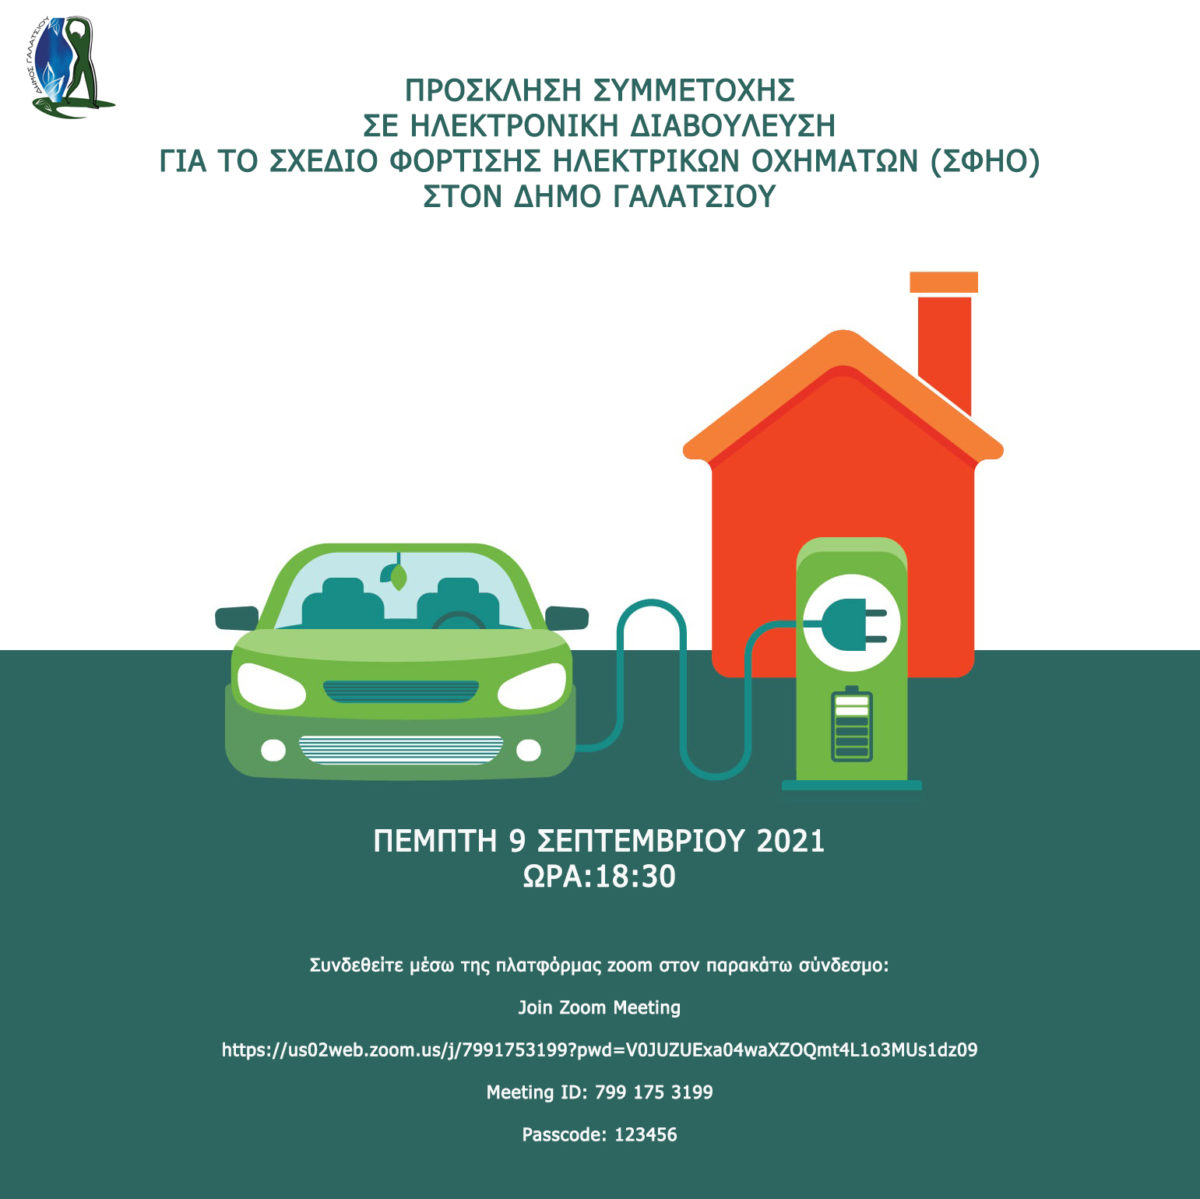 Την Πέμπτη 9 Σεπτεμβρίου η Διαβούλευση για το Σχέδιο Φόρτισης Ηλεκτρικών Οχημάτων στον Δήμο Γαλατσίου